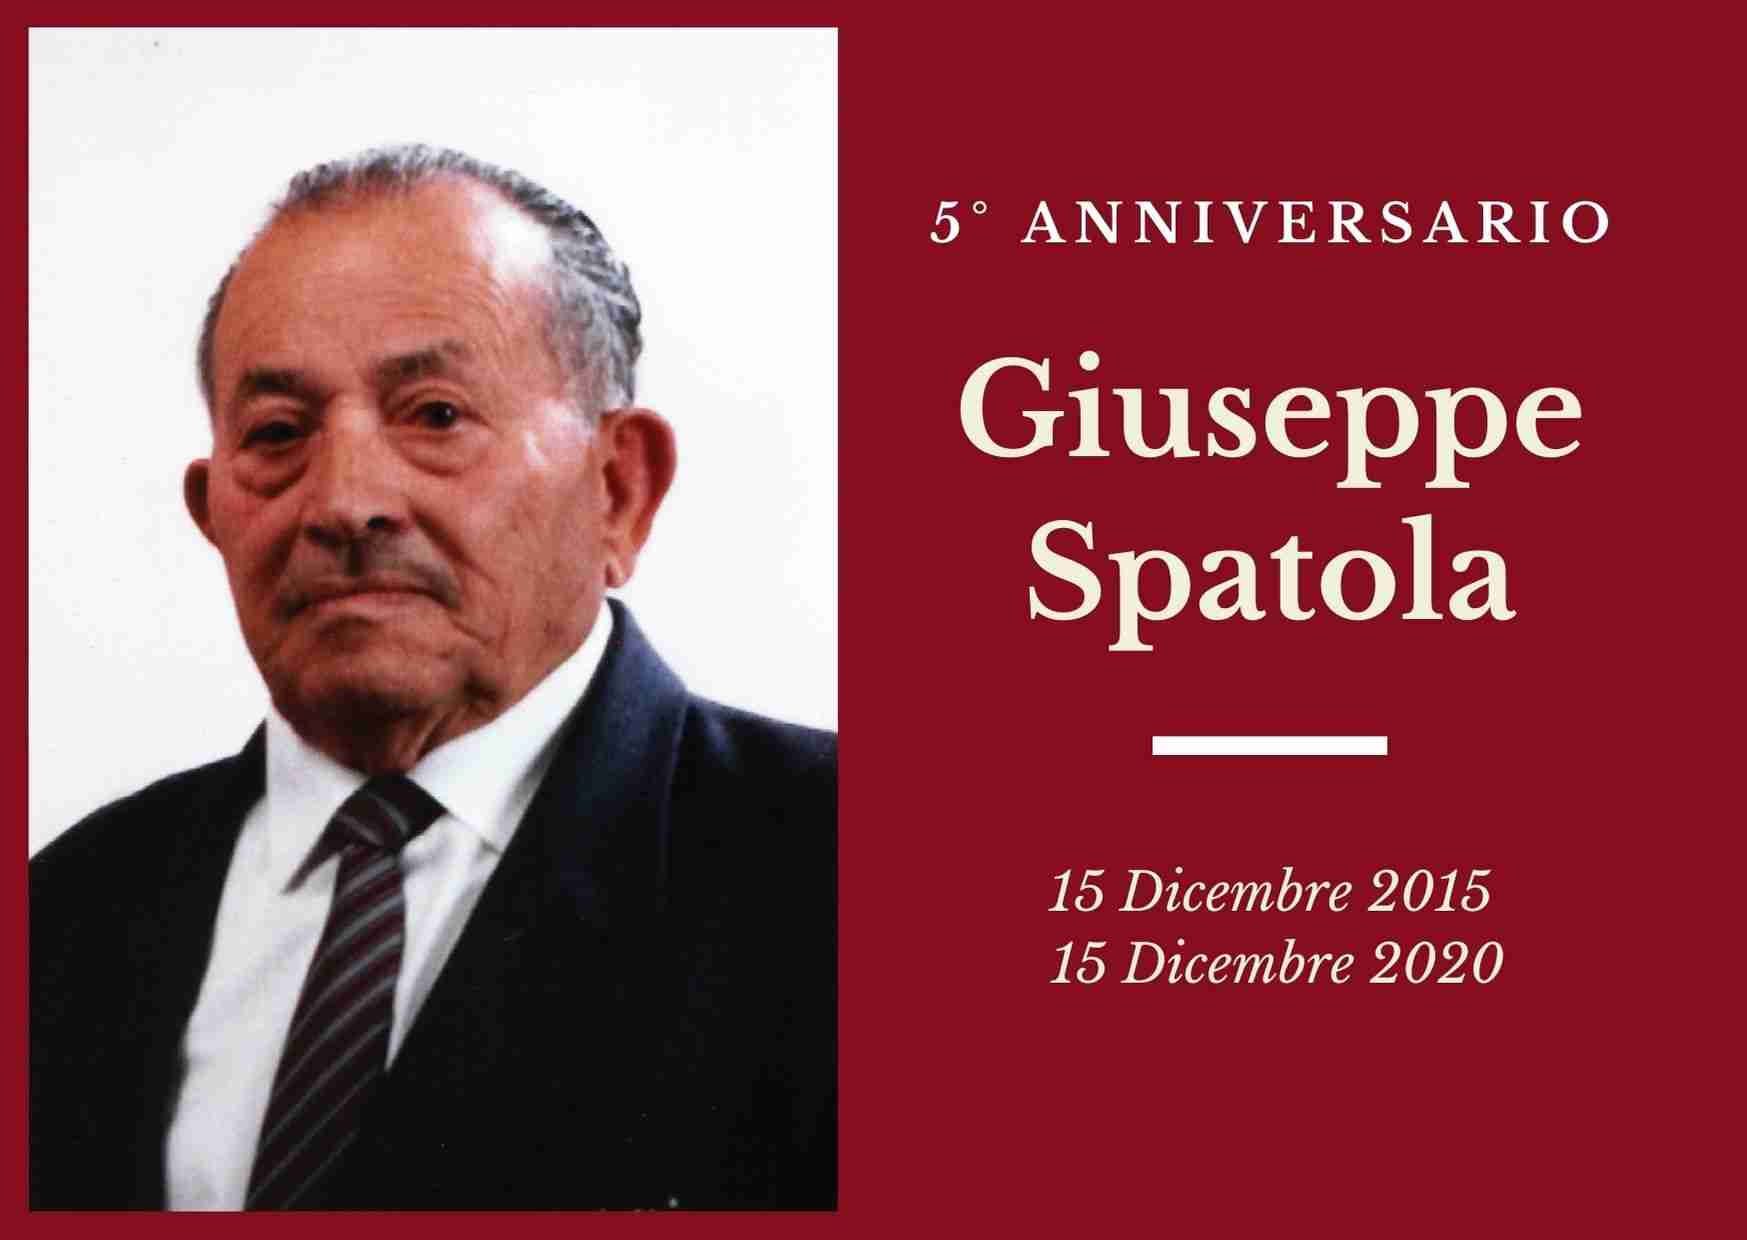 Necrologio: ricorre oggi il 5° anniversario di Giuseppe Spatola